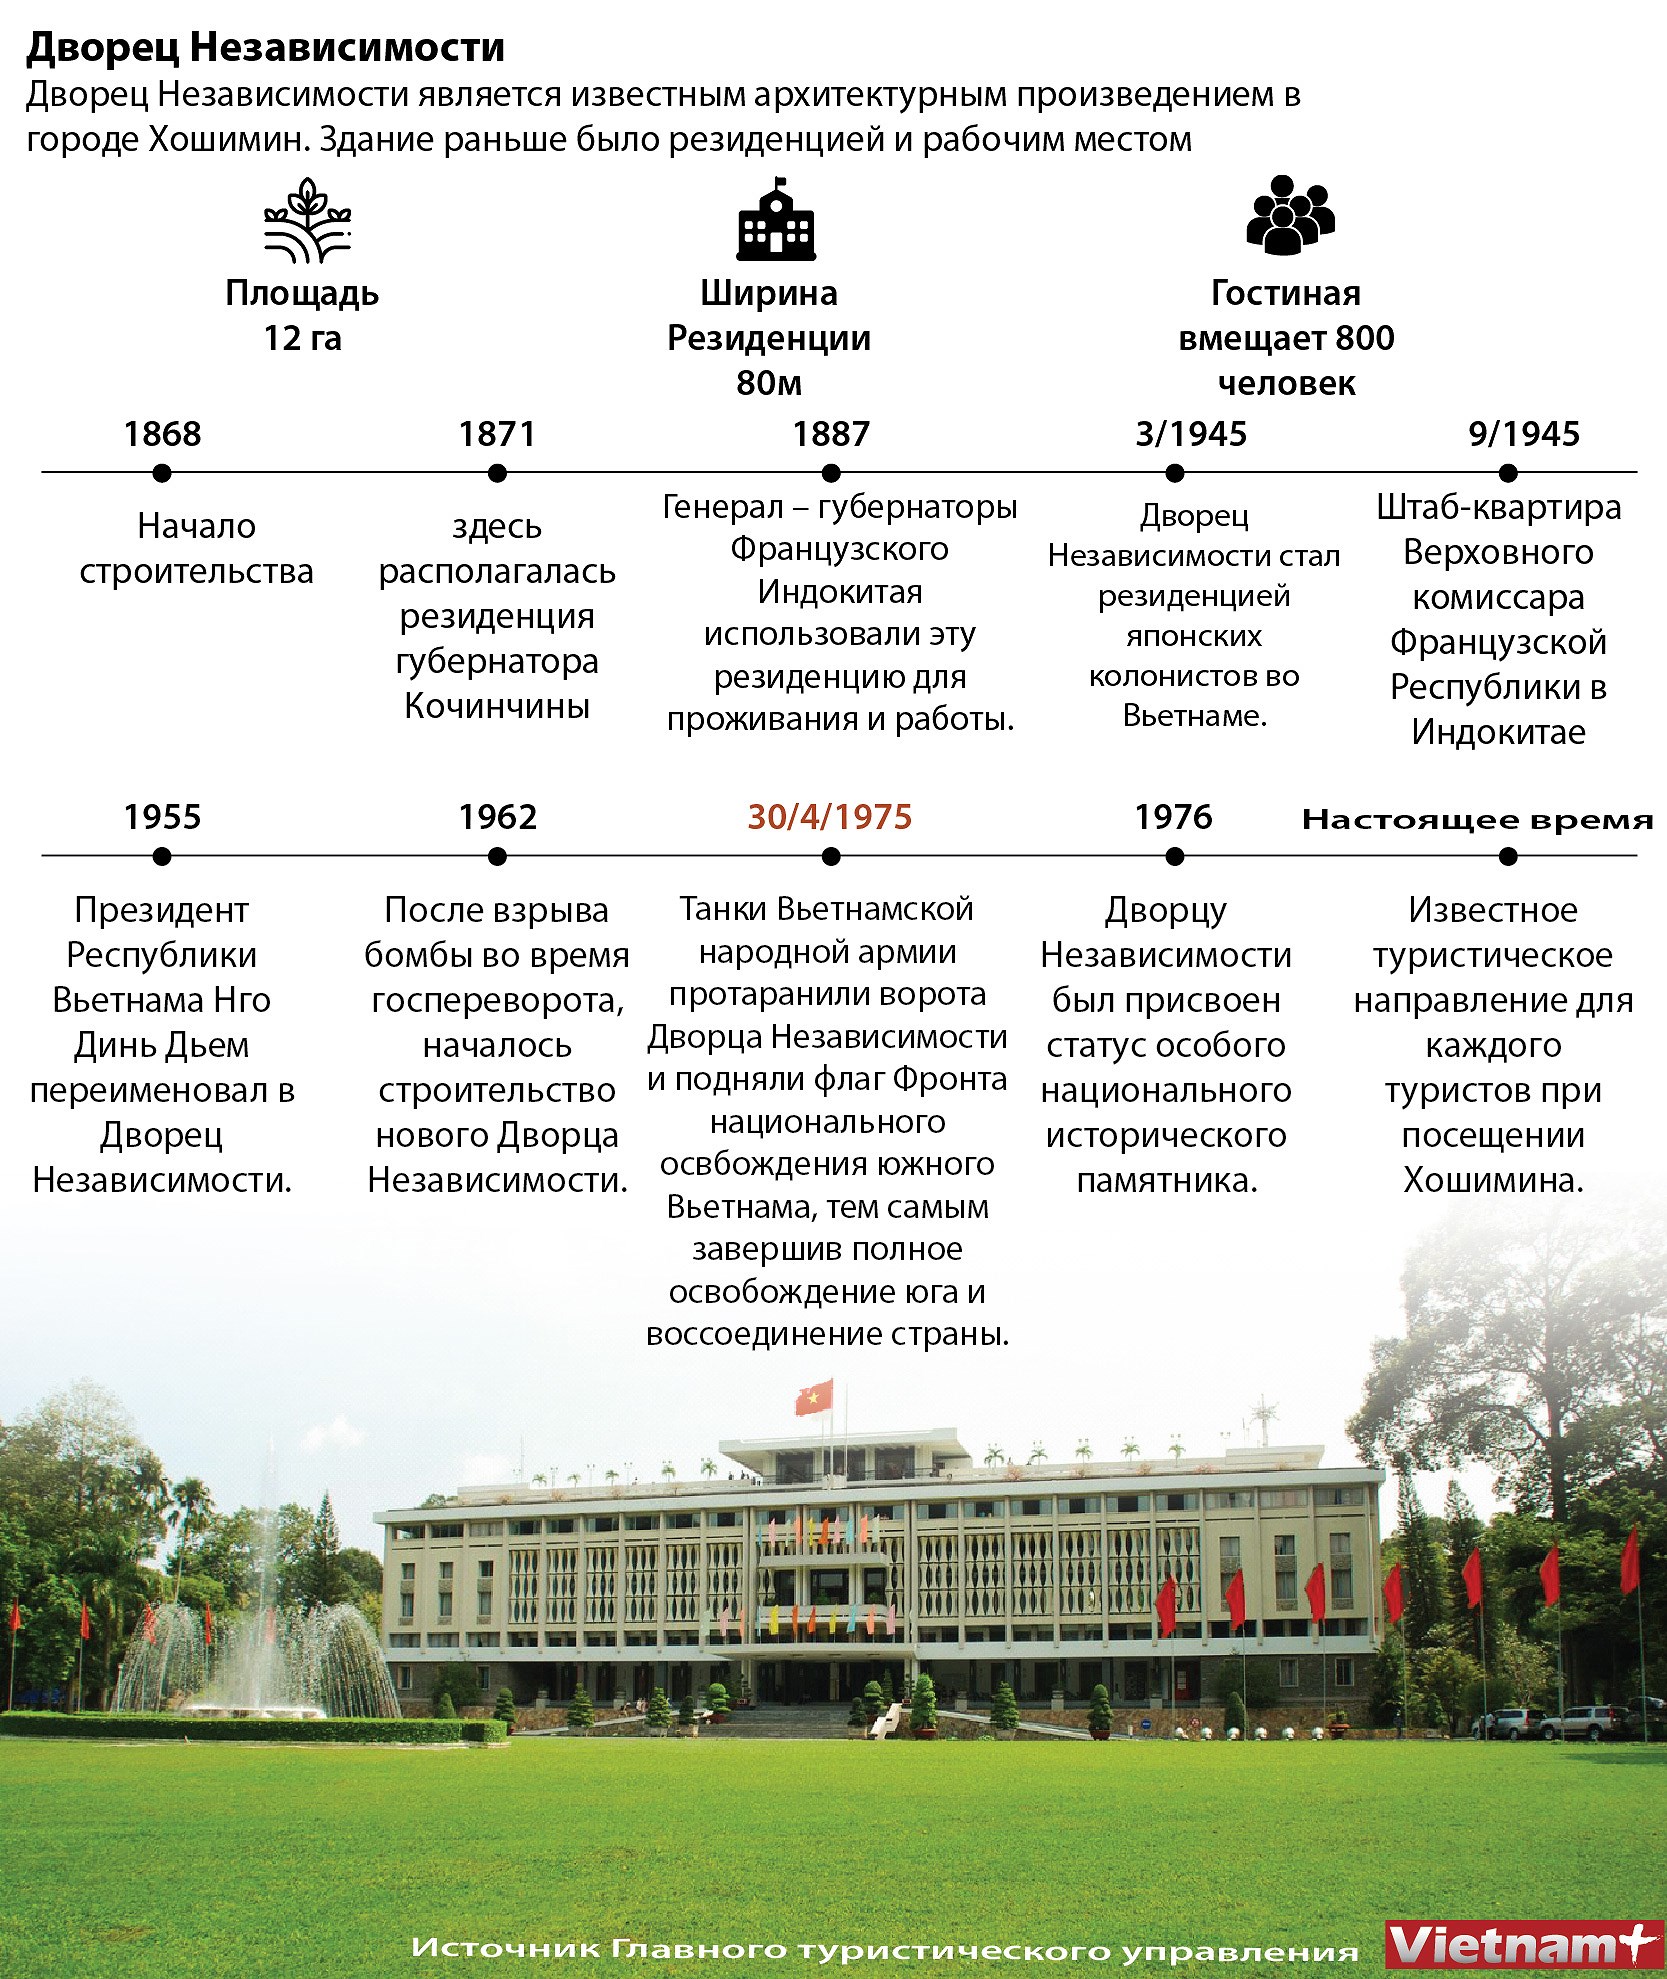 Откроите для себя особыи национальныи памятник Дворец Независимости hinh anh 1